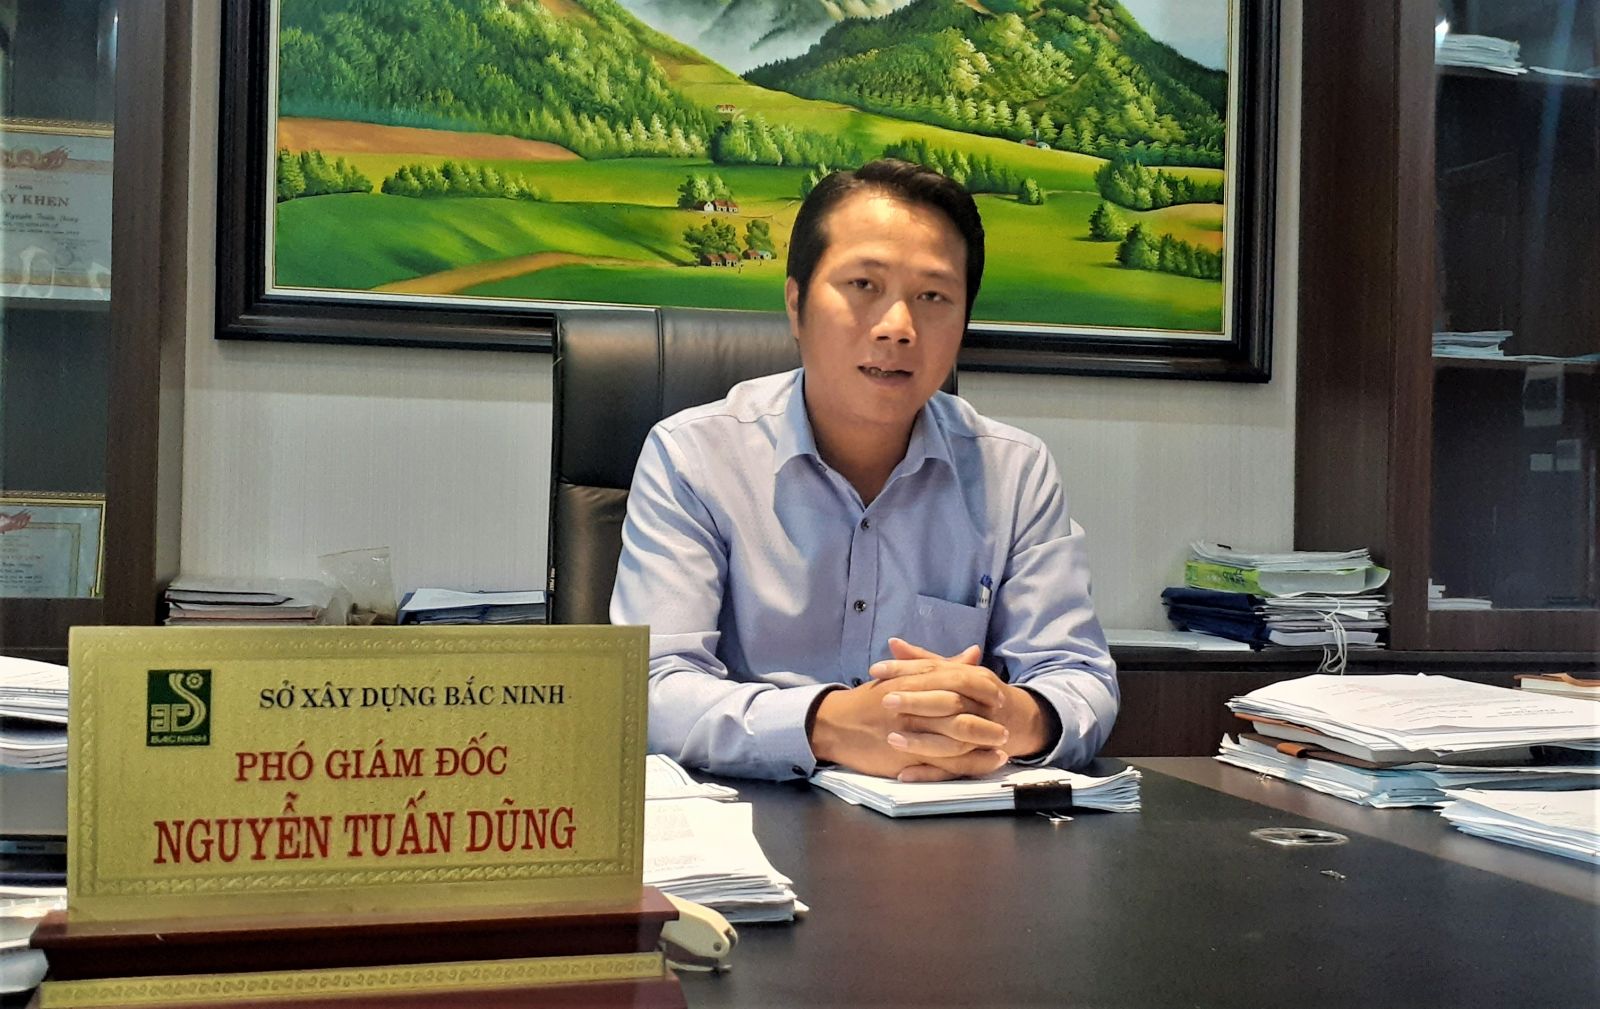 Phó Giám đốc Sở Xây dựng Bắc Ninh chỉ đạo xử lý nghiêm vi phạm xây dựng